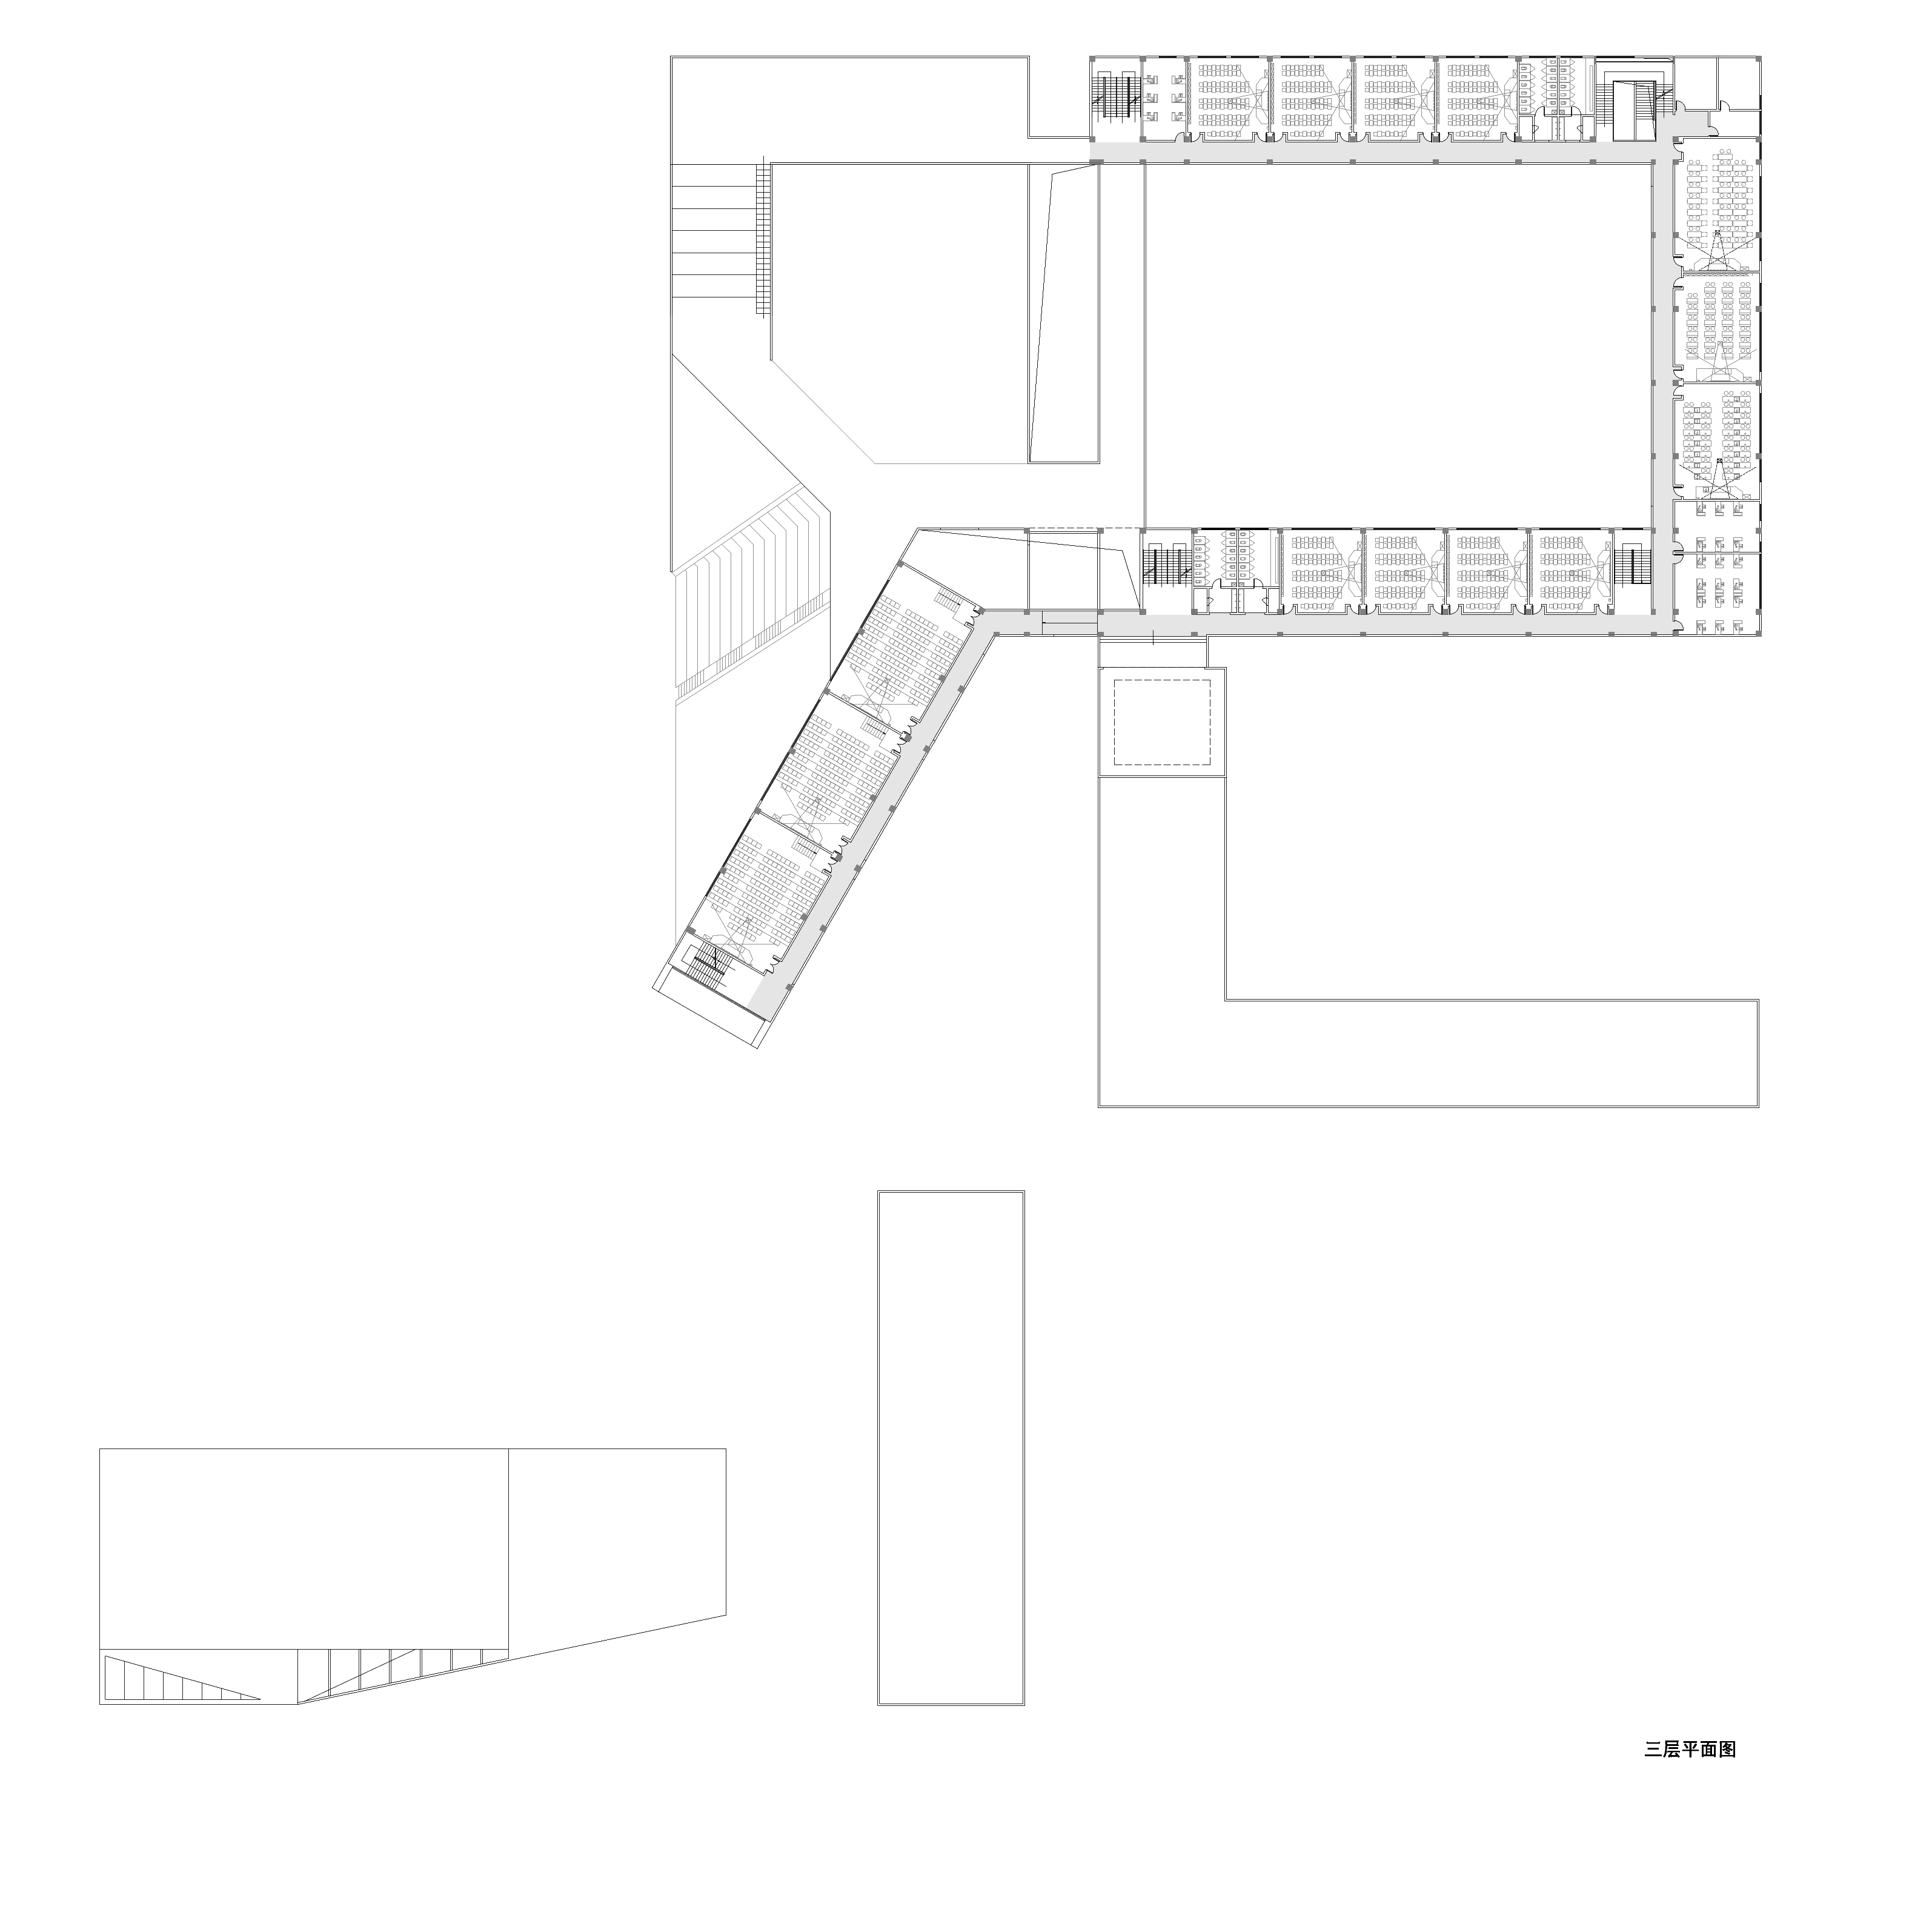 中学三层平面图-middle school third floor plan.jpg